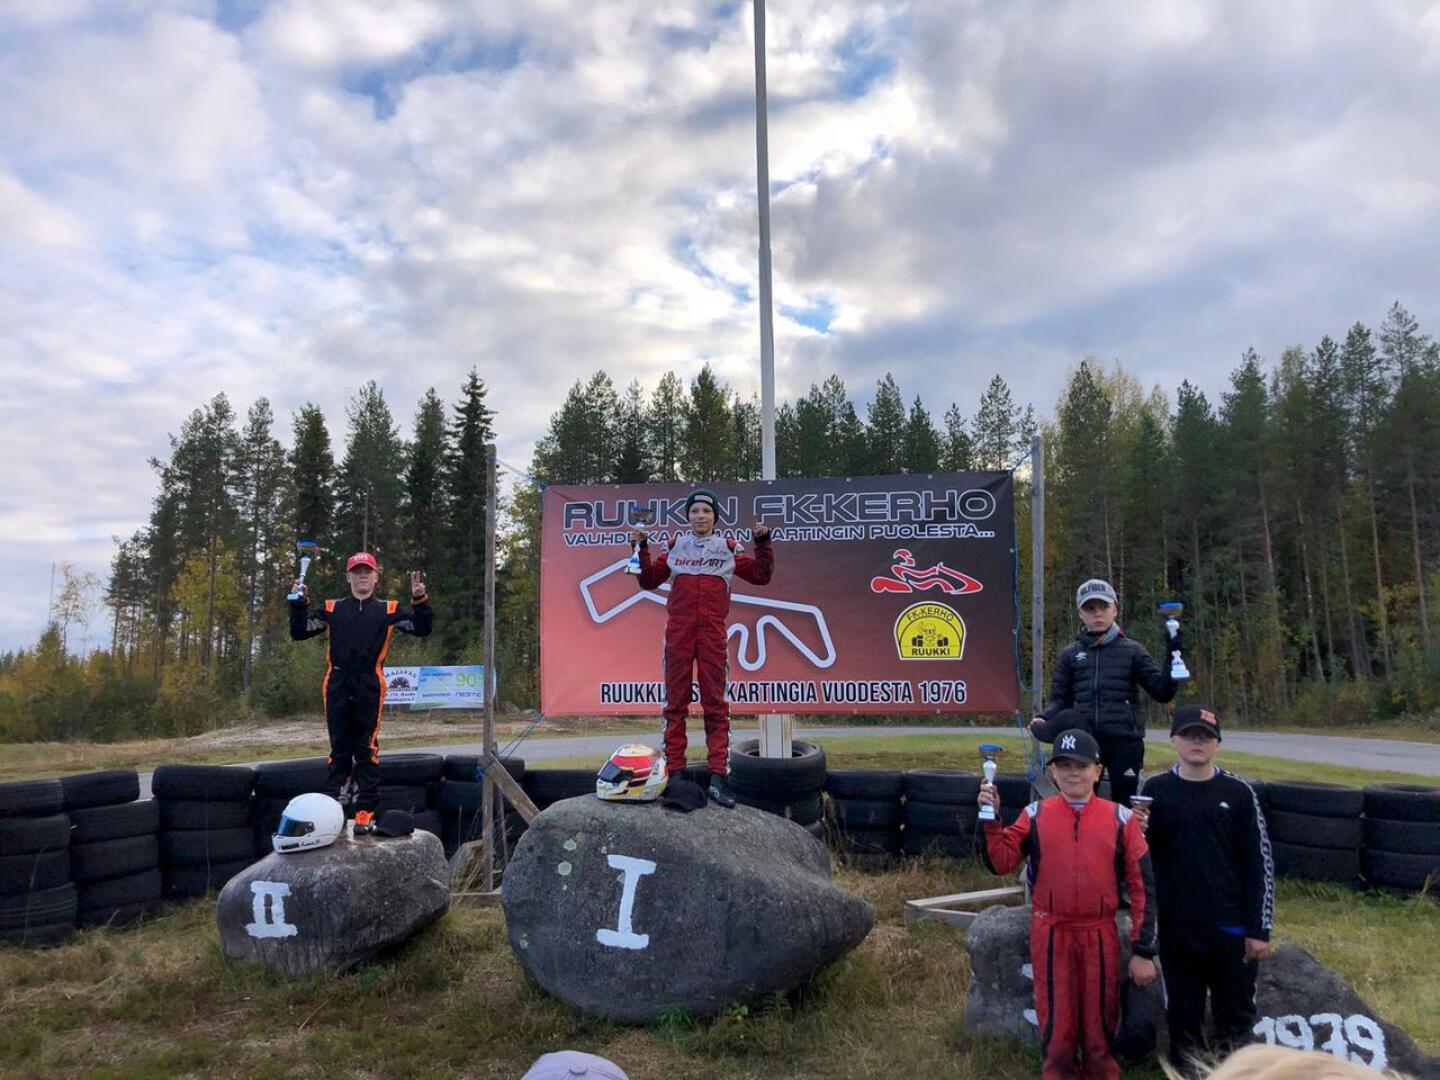 Viikonlopun karting-kisojen voittajaksi selviytyi Onni Tuisku ja veteliläinen Lauri Sillanpää tuli toiseksi 0,3 sekunnin erotuksella. Kolmas oli Roope Miettinen. 